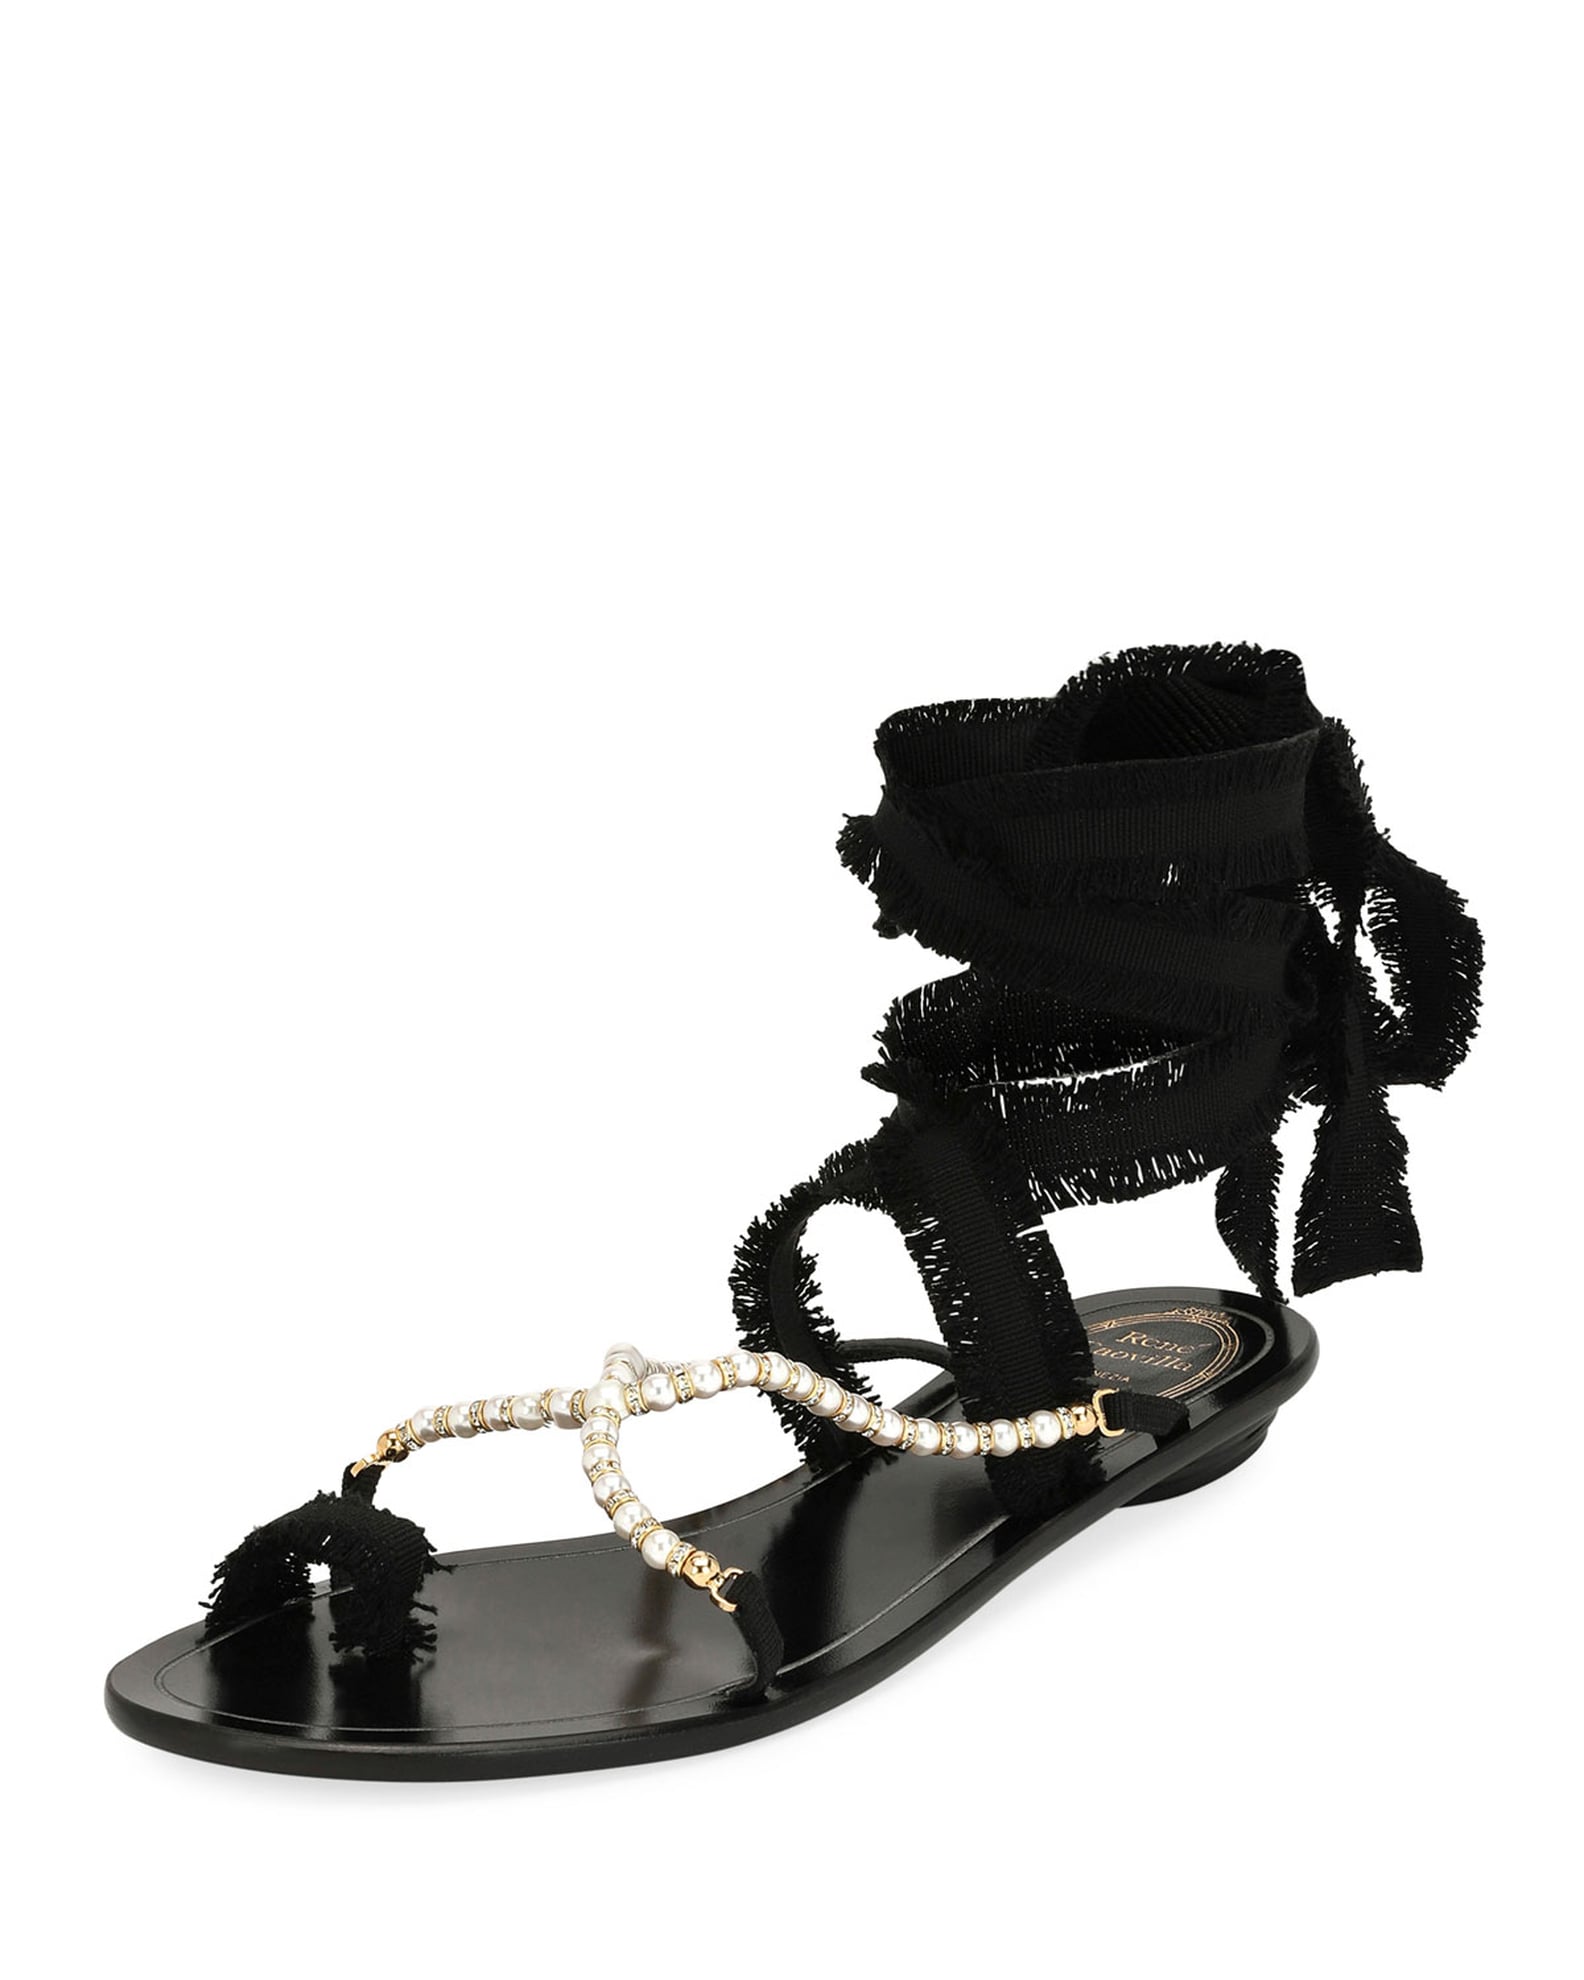 Gwyneth Paltrow Black Ankle-Wrap Sandals | POPSUGAR Fashion